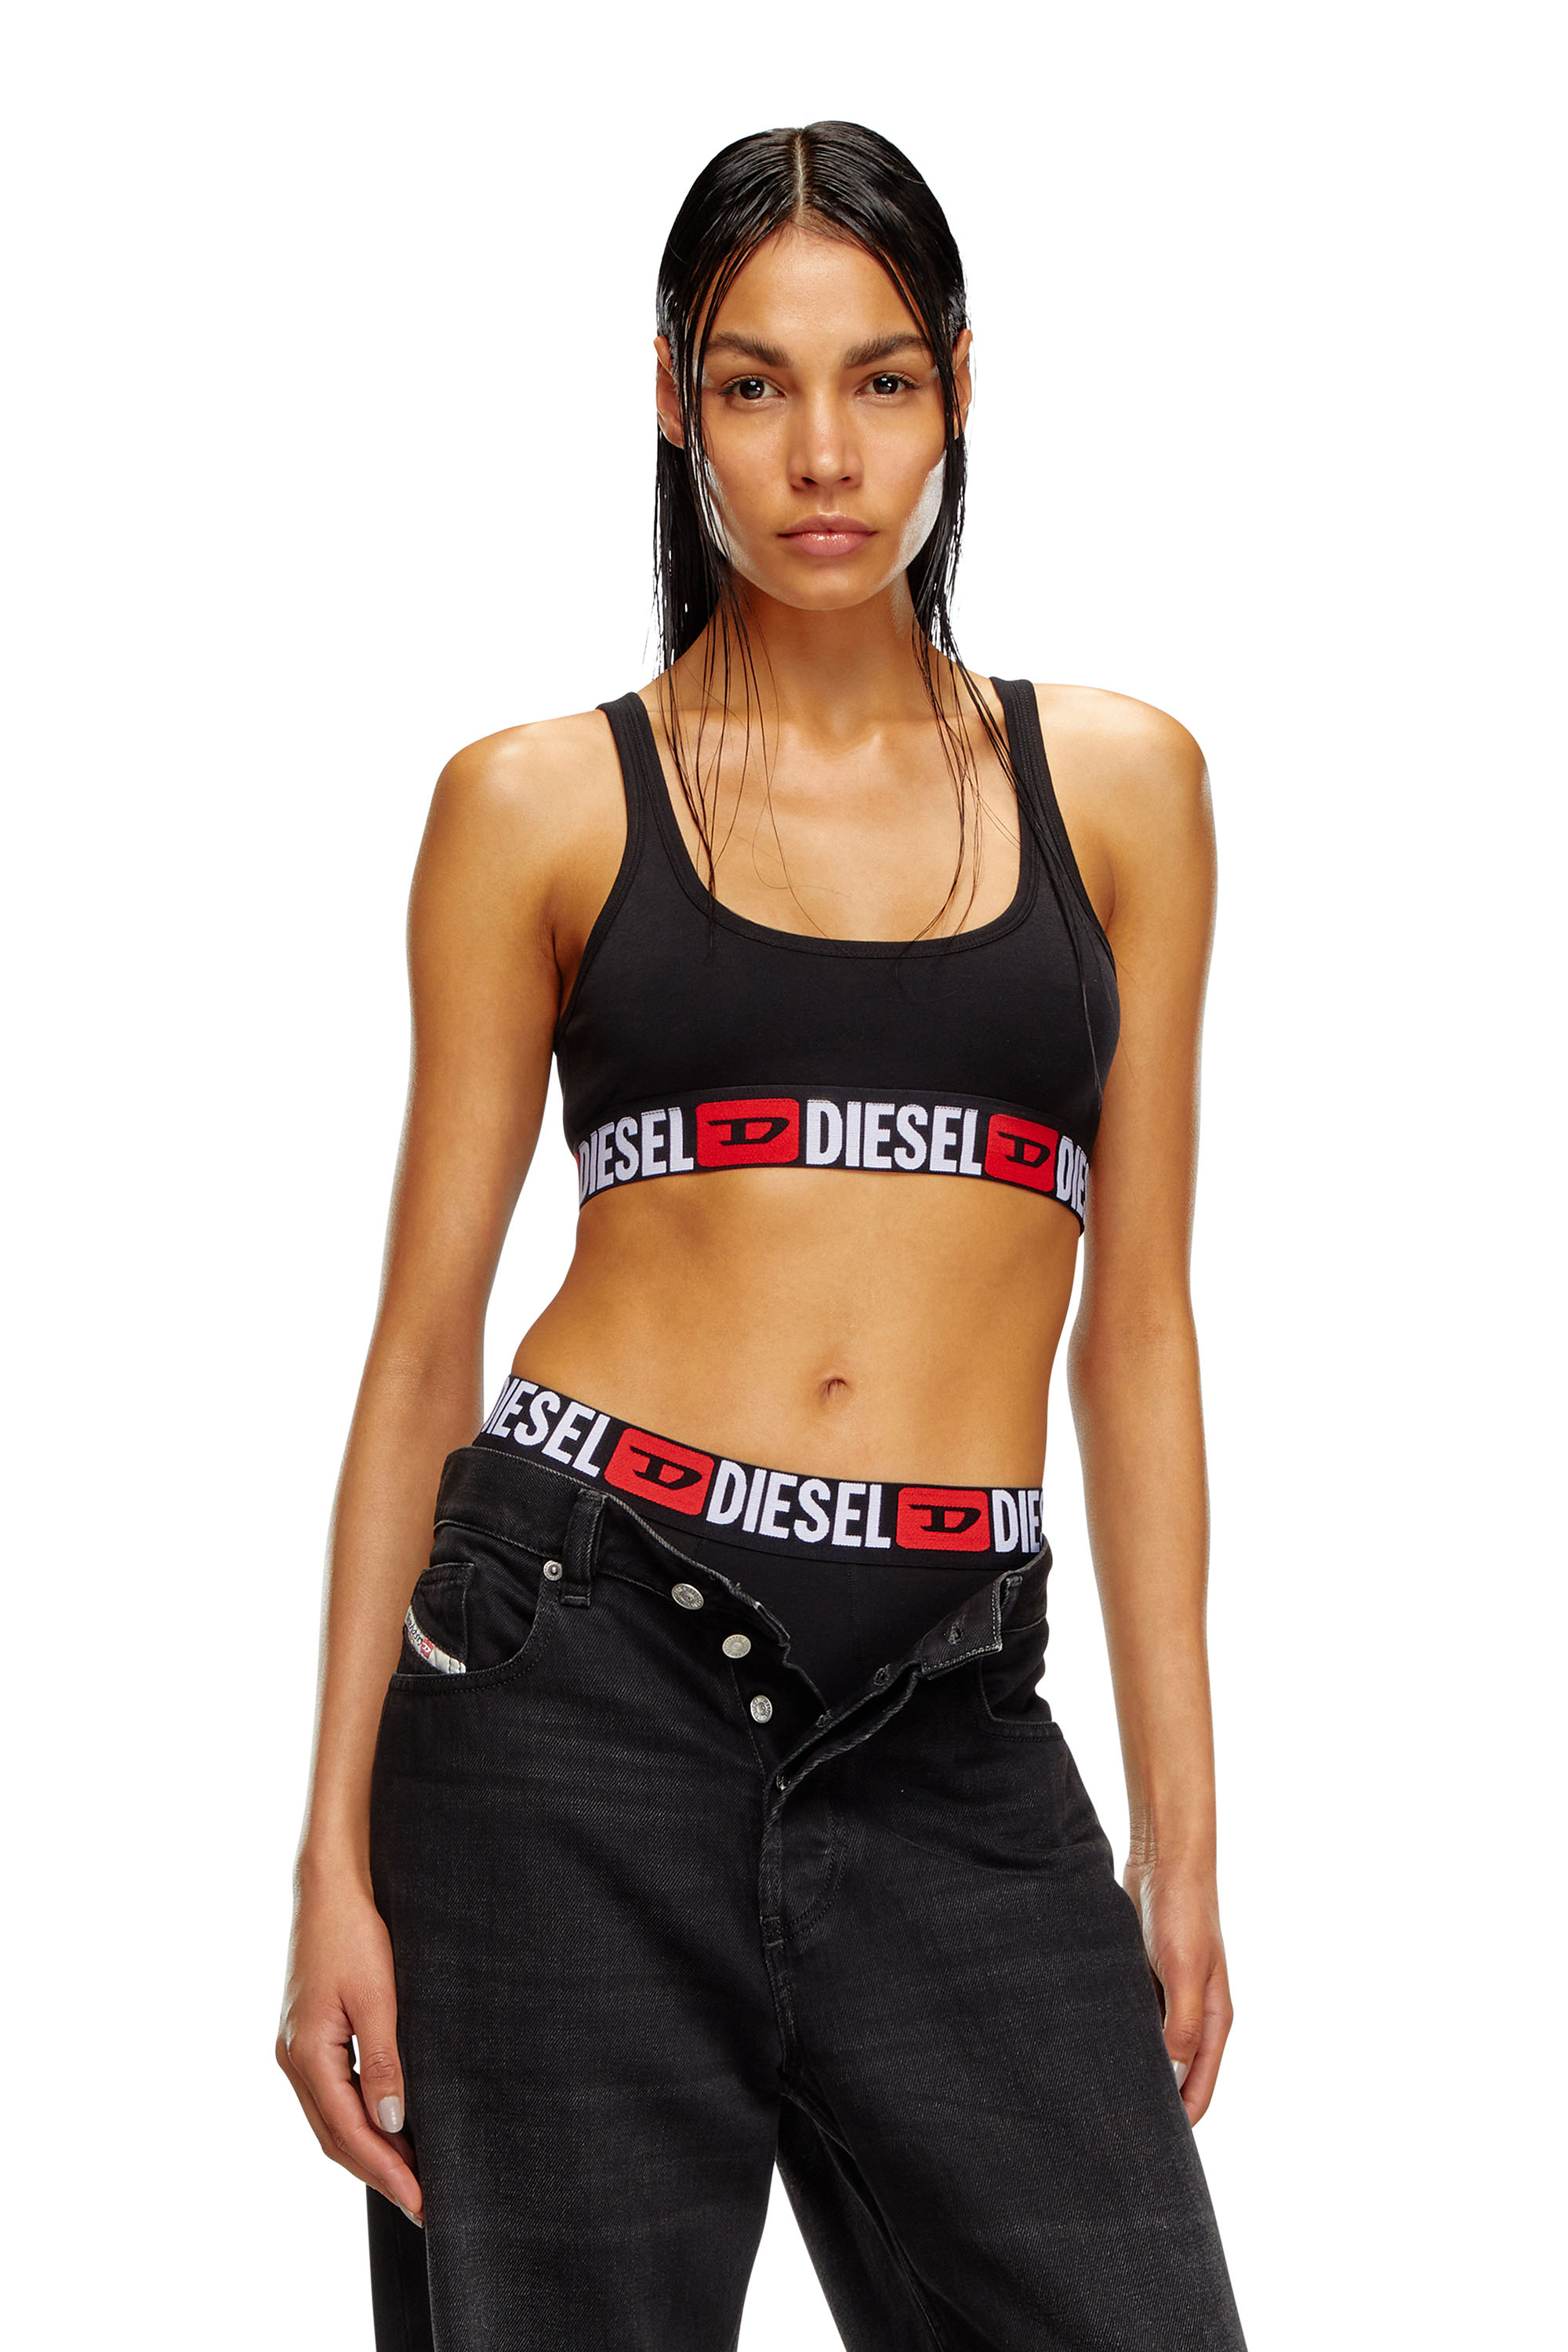 Diesel Women's Sport Bras: banded sports bras